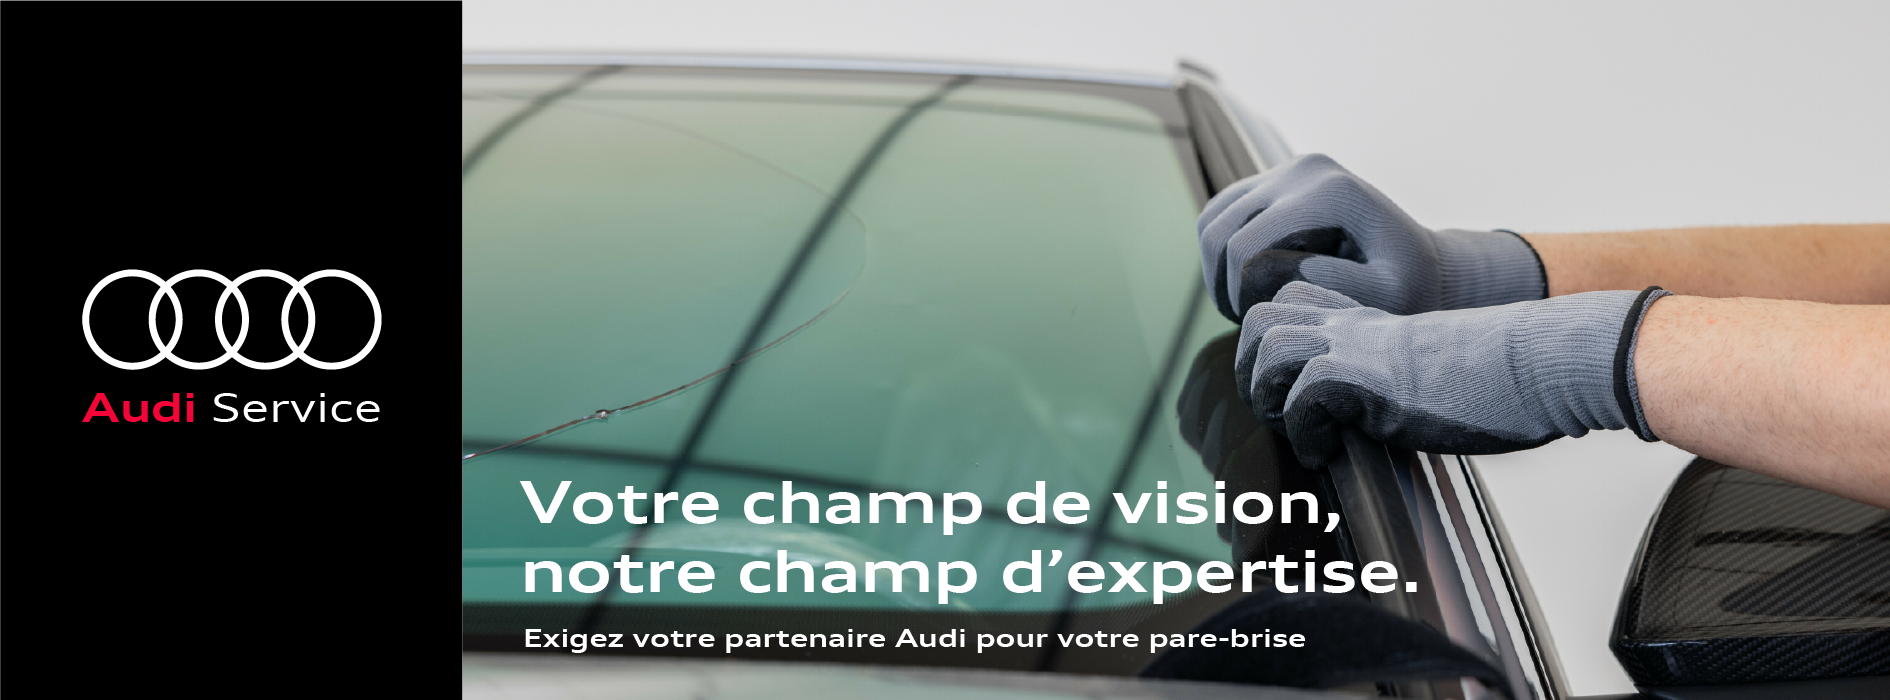 BAN_Campagne pare-brise_Audi